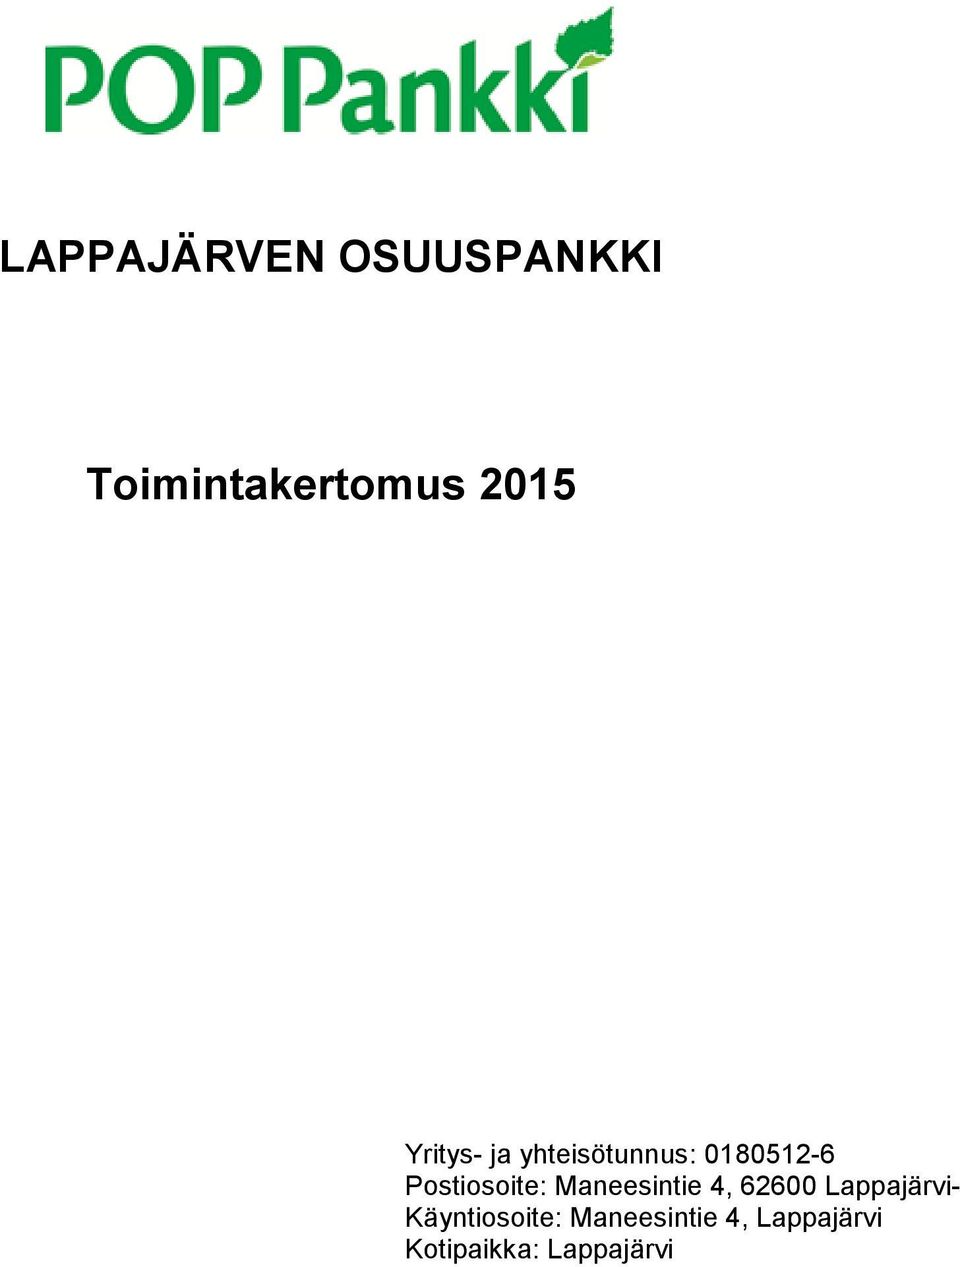 Postiosoite: Maneesintie 4, 62600 Lappajärvi-